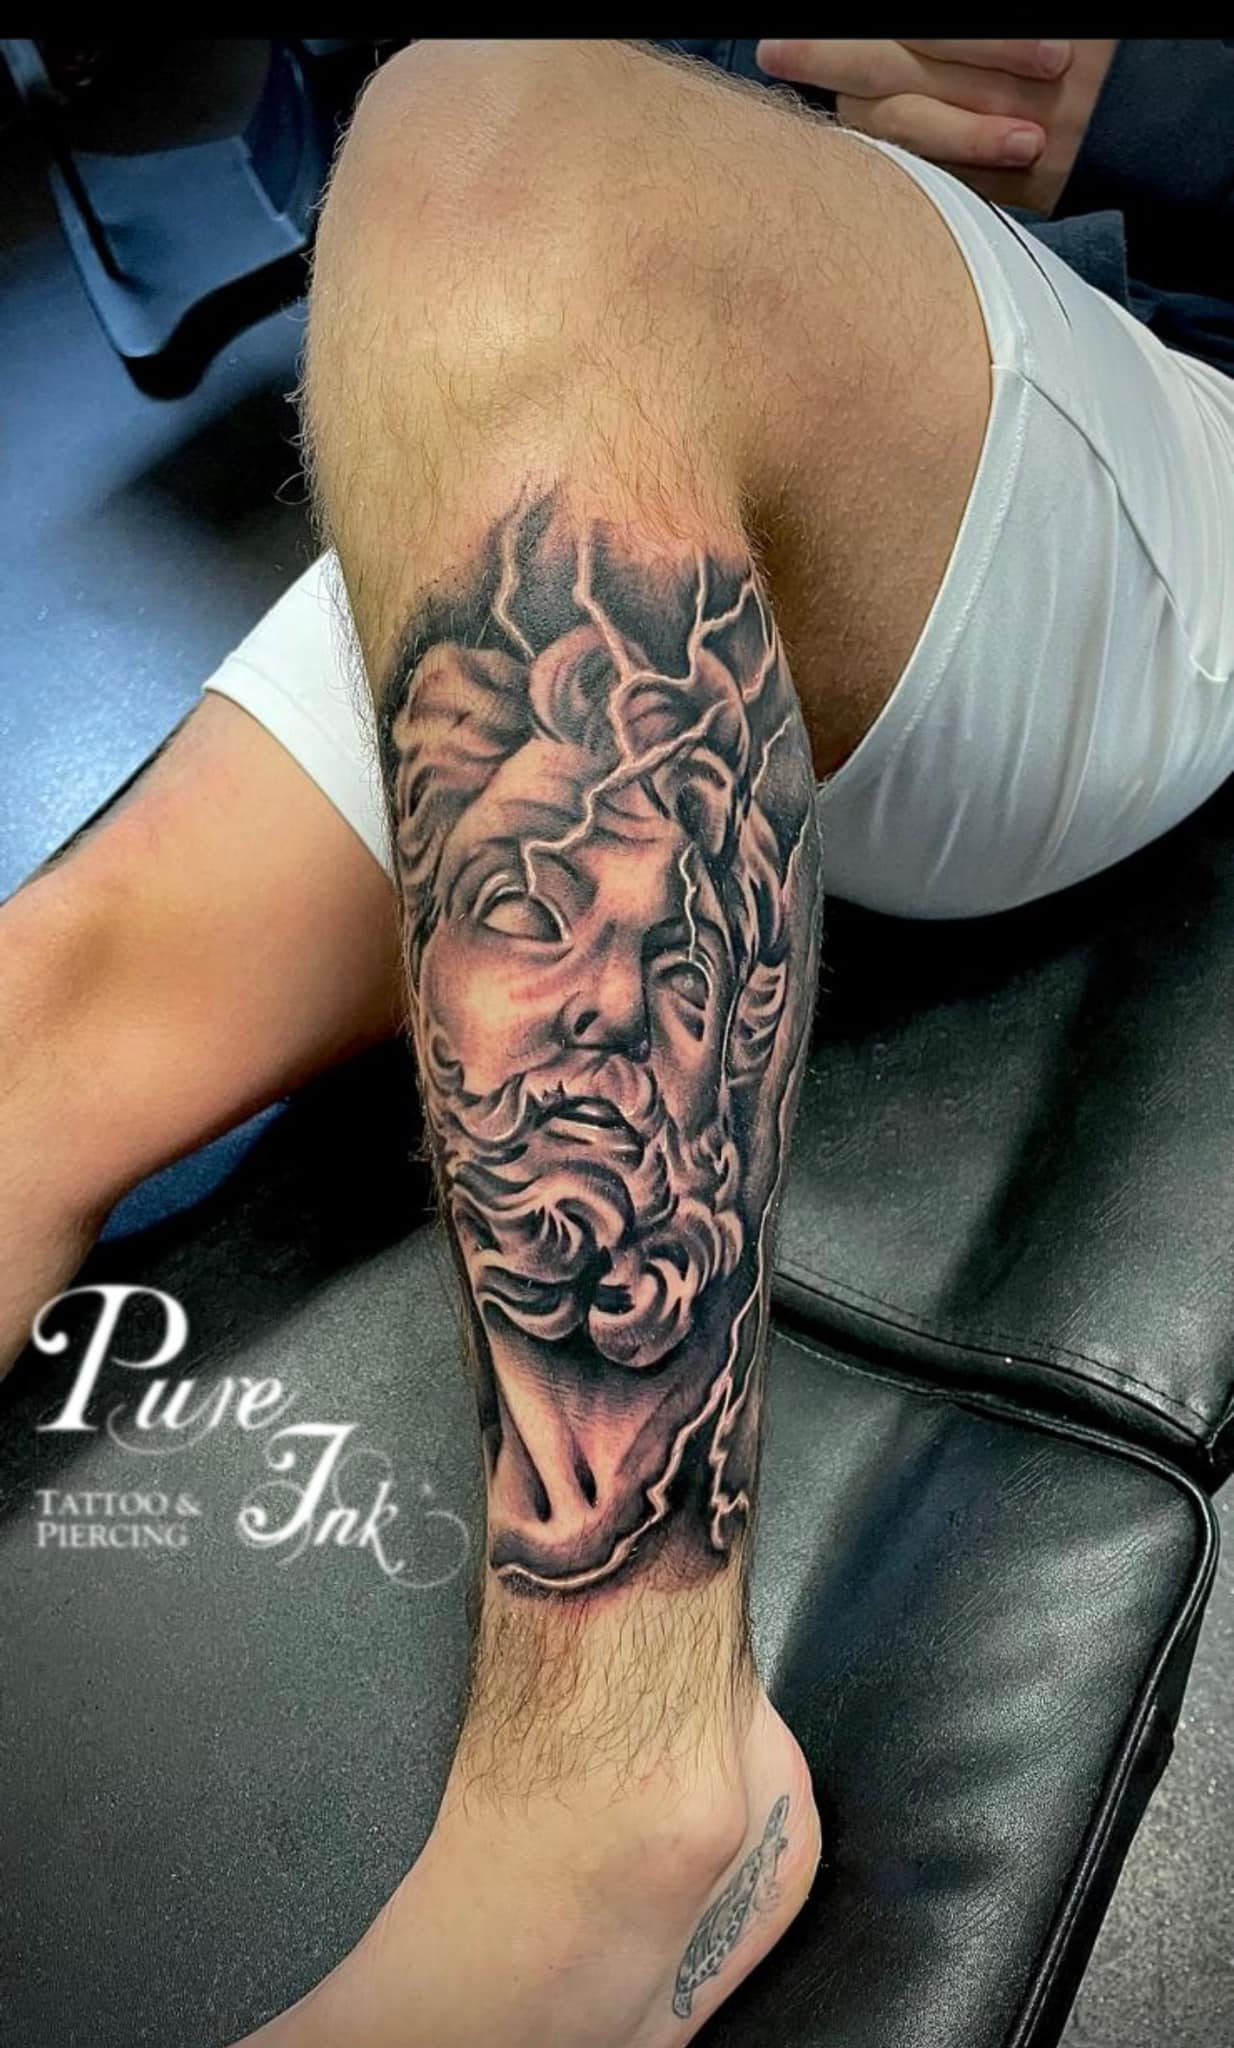 Tito Rodriguez - Tattoo Artist - Ledgewood, NJ - Pure Ink Tattoo Studios